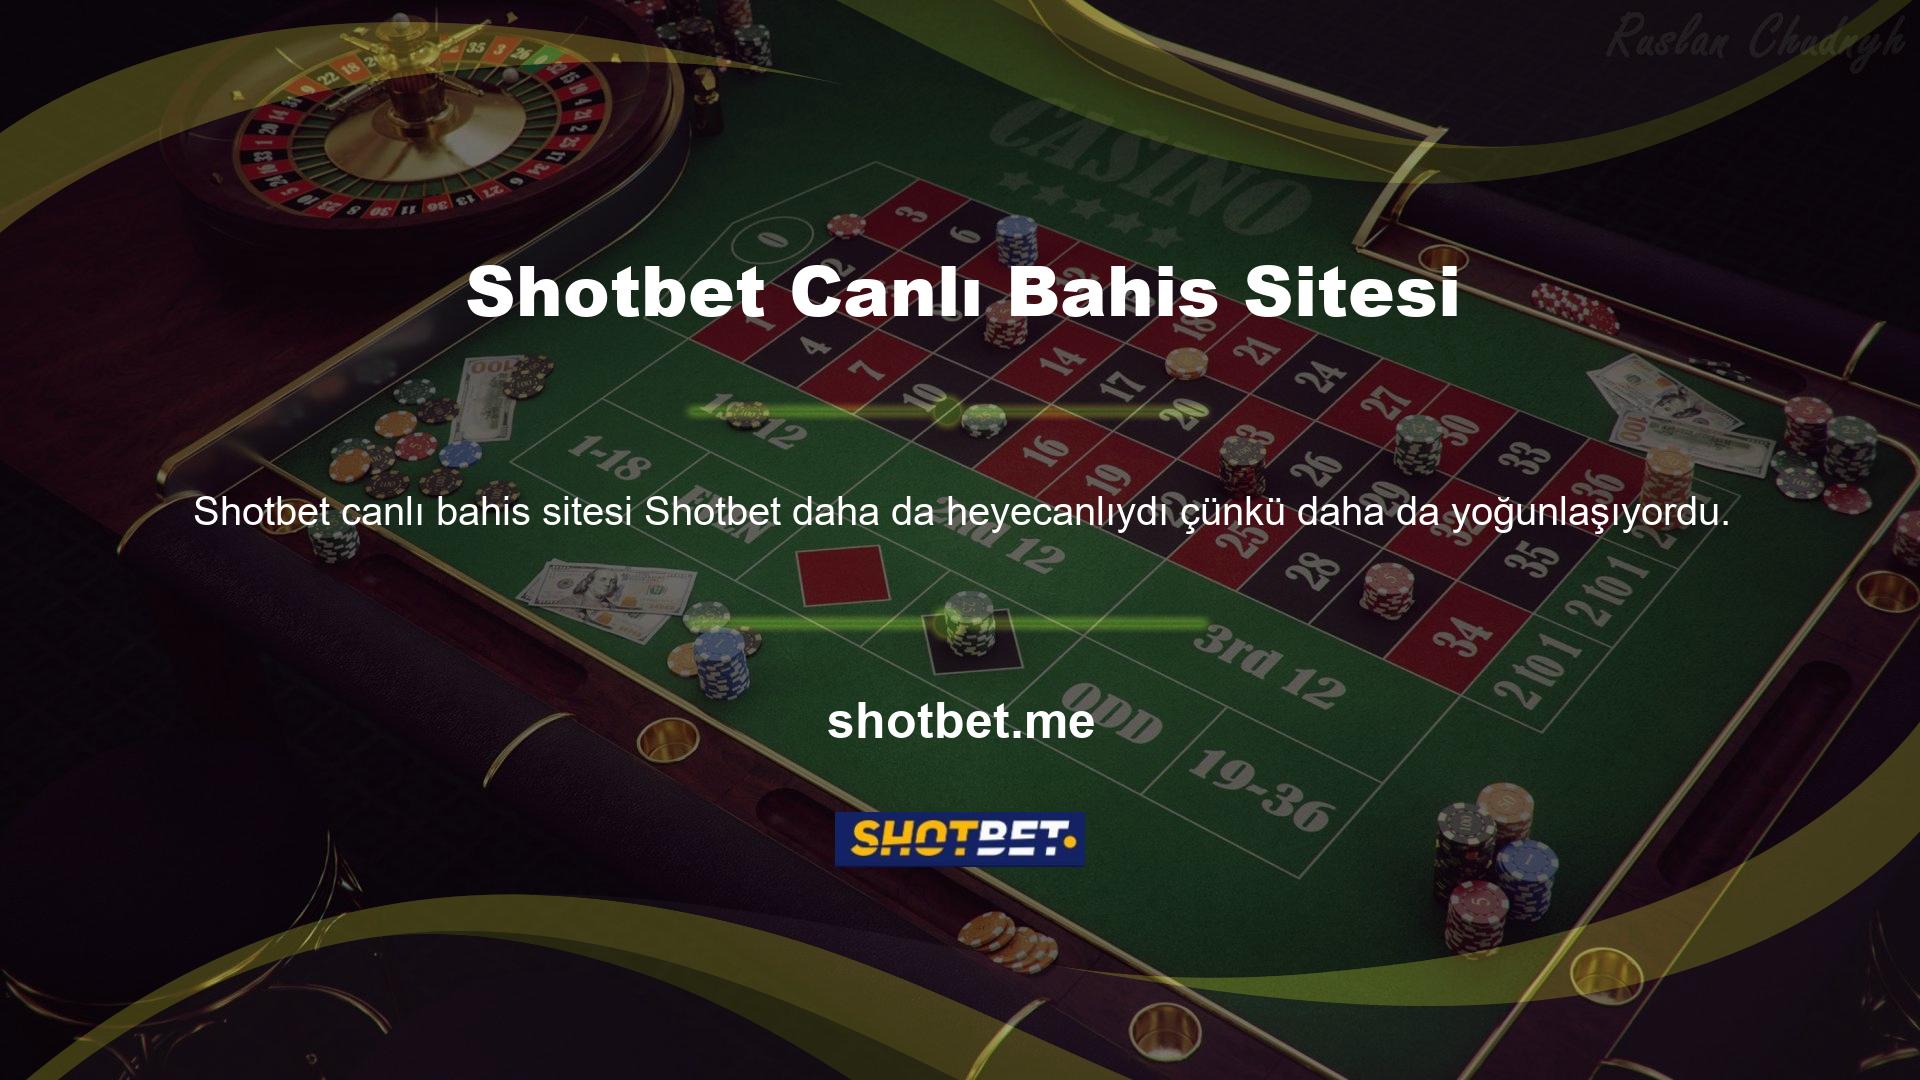 Sanal sporlardan casino oyunlarına, bingodan e-spor yarışmalarına kadar Shotbet üzerinden para kazanmanın birçok yolu var